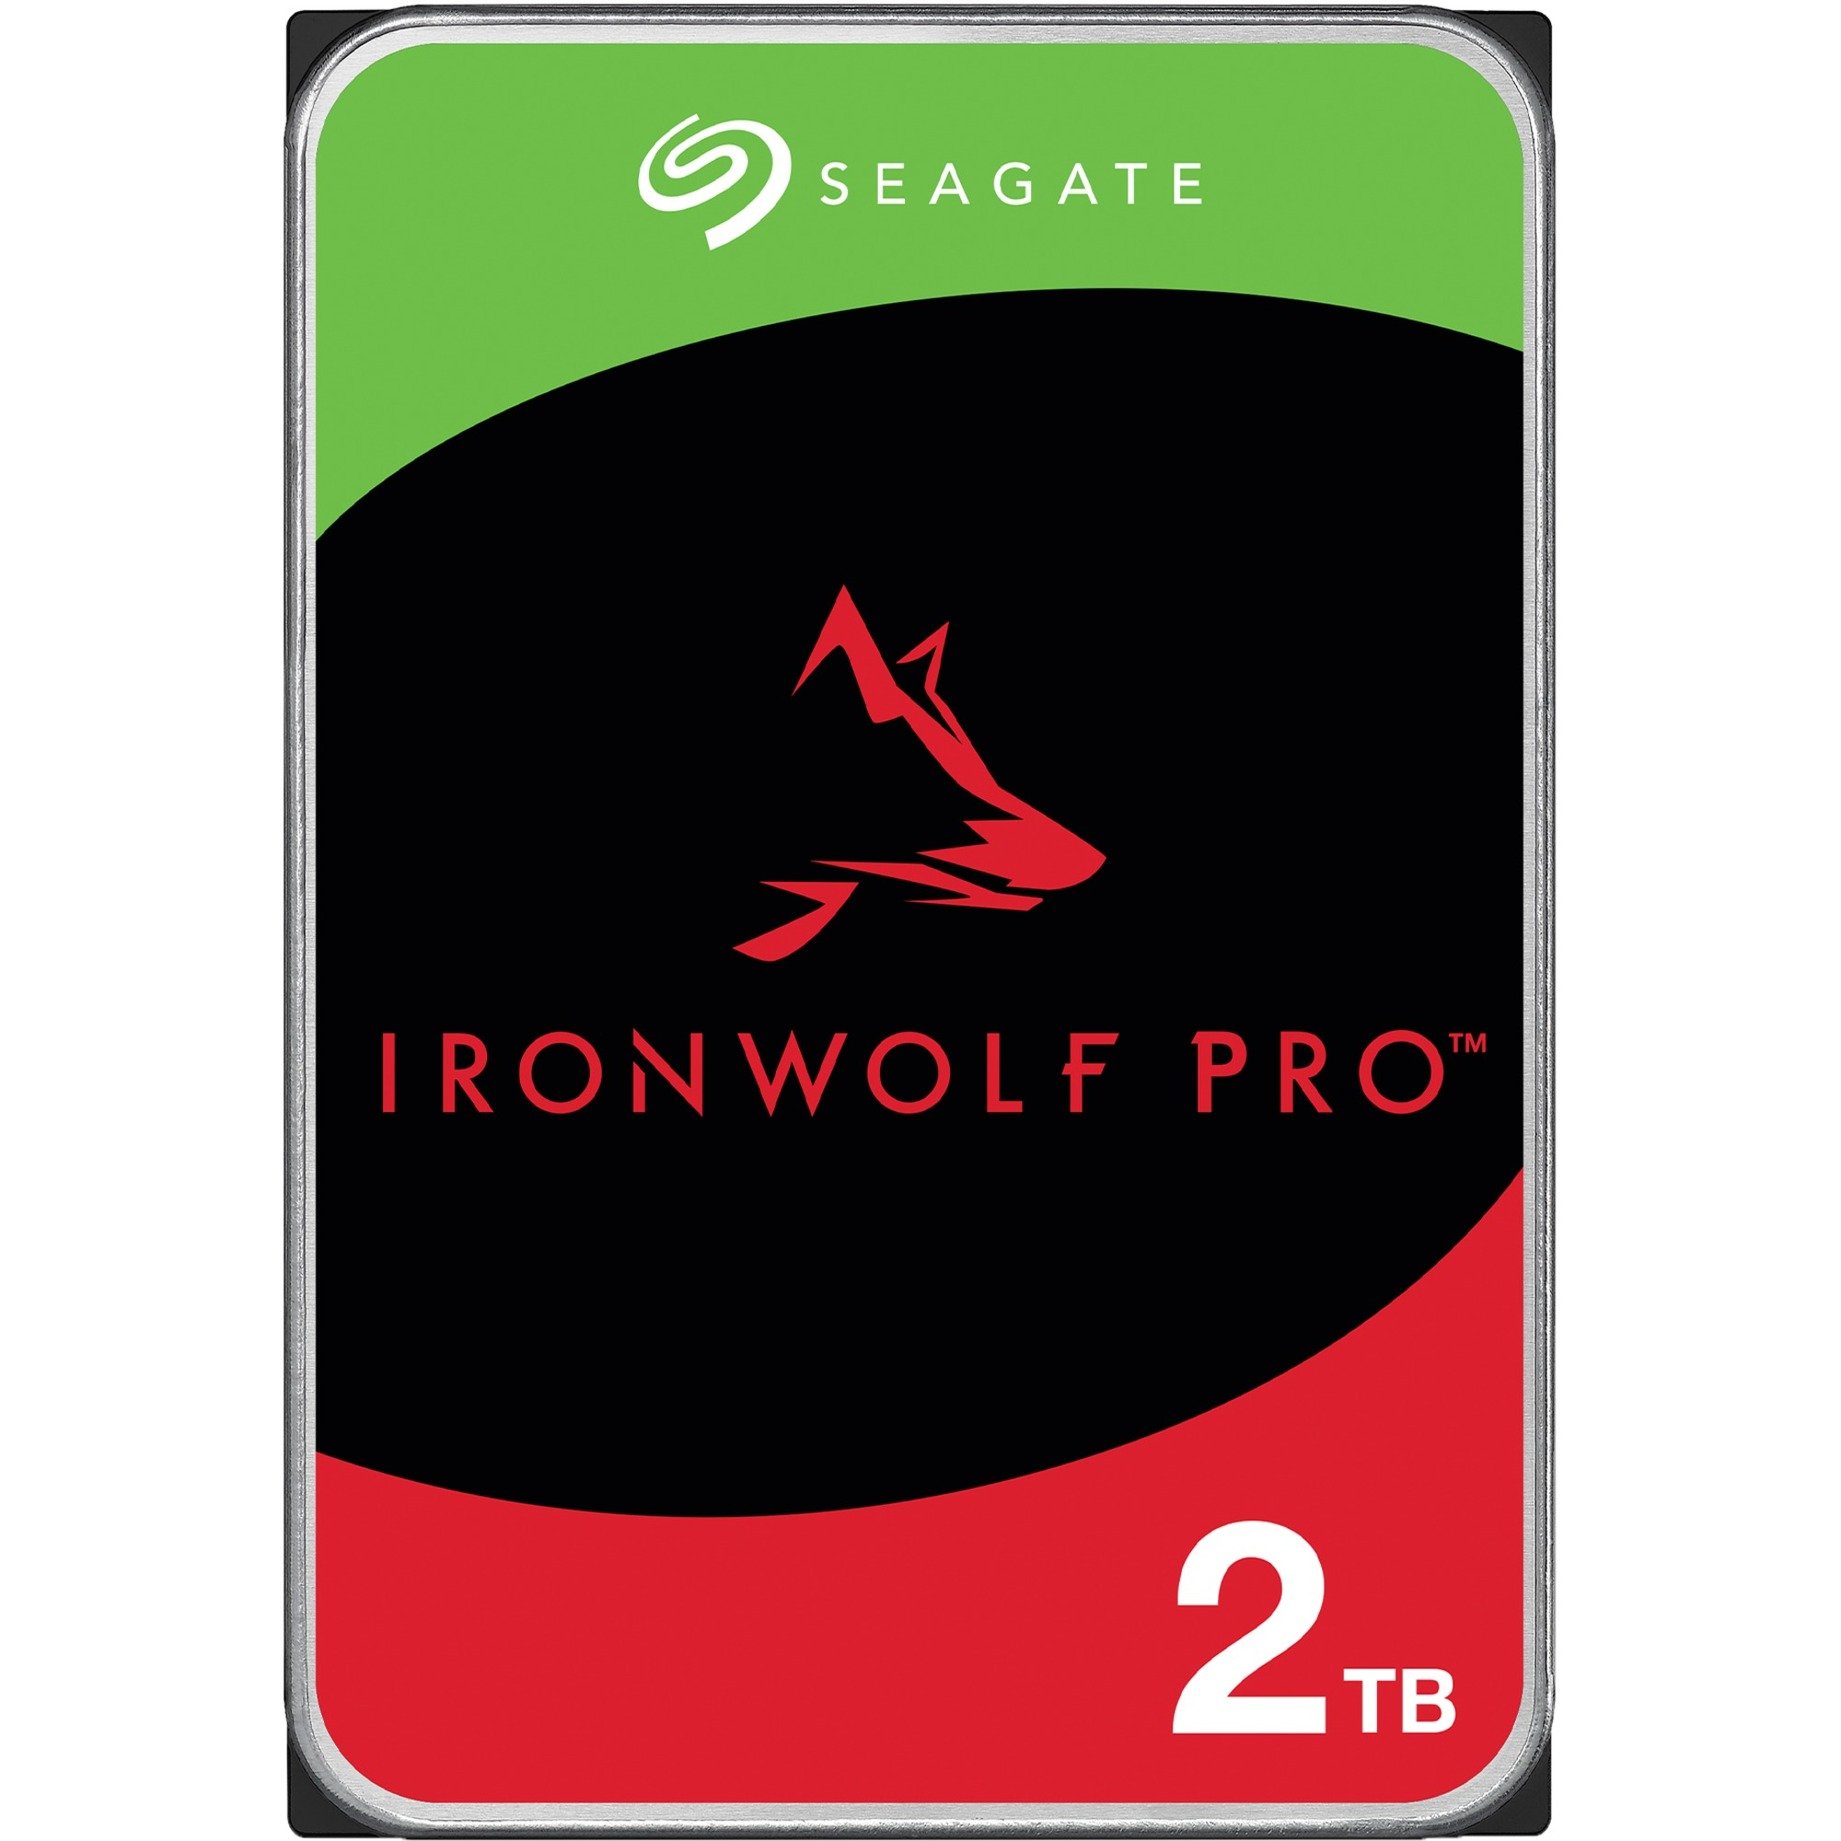 IronWolf Pro NAS 2 TB CMR, Festplatte von Seagate